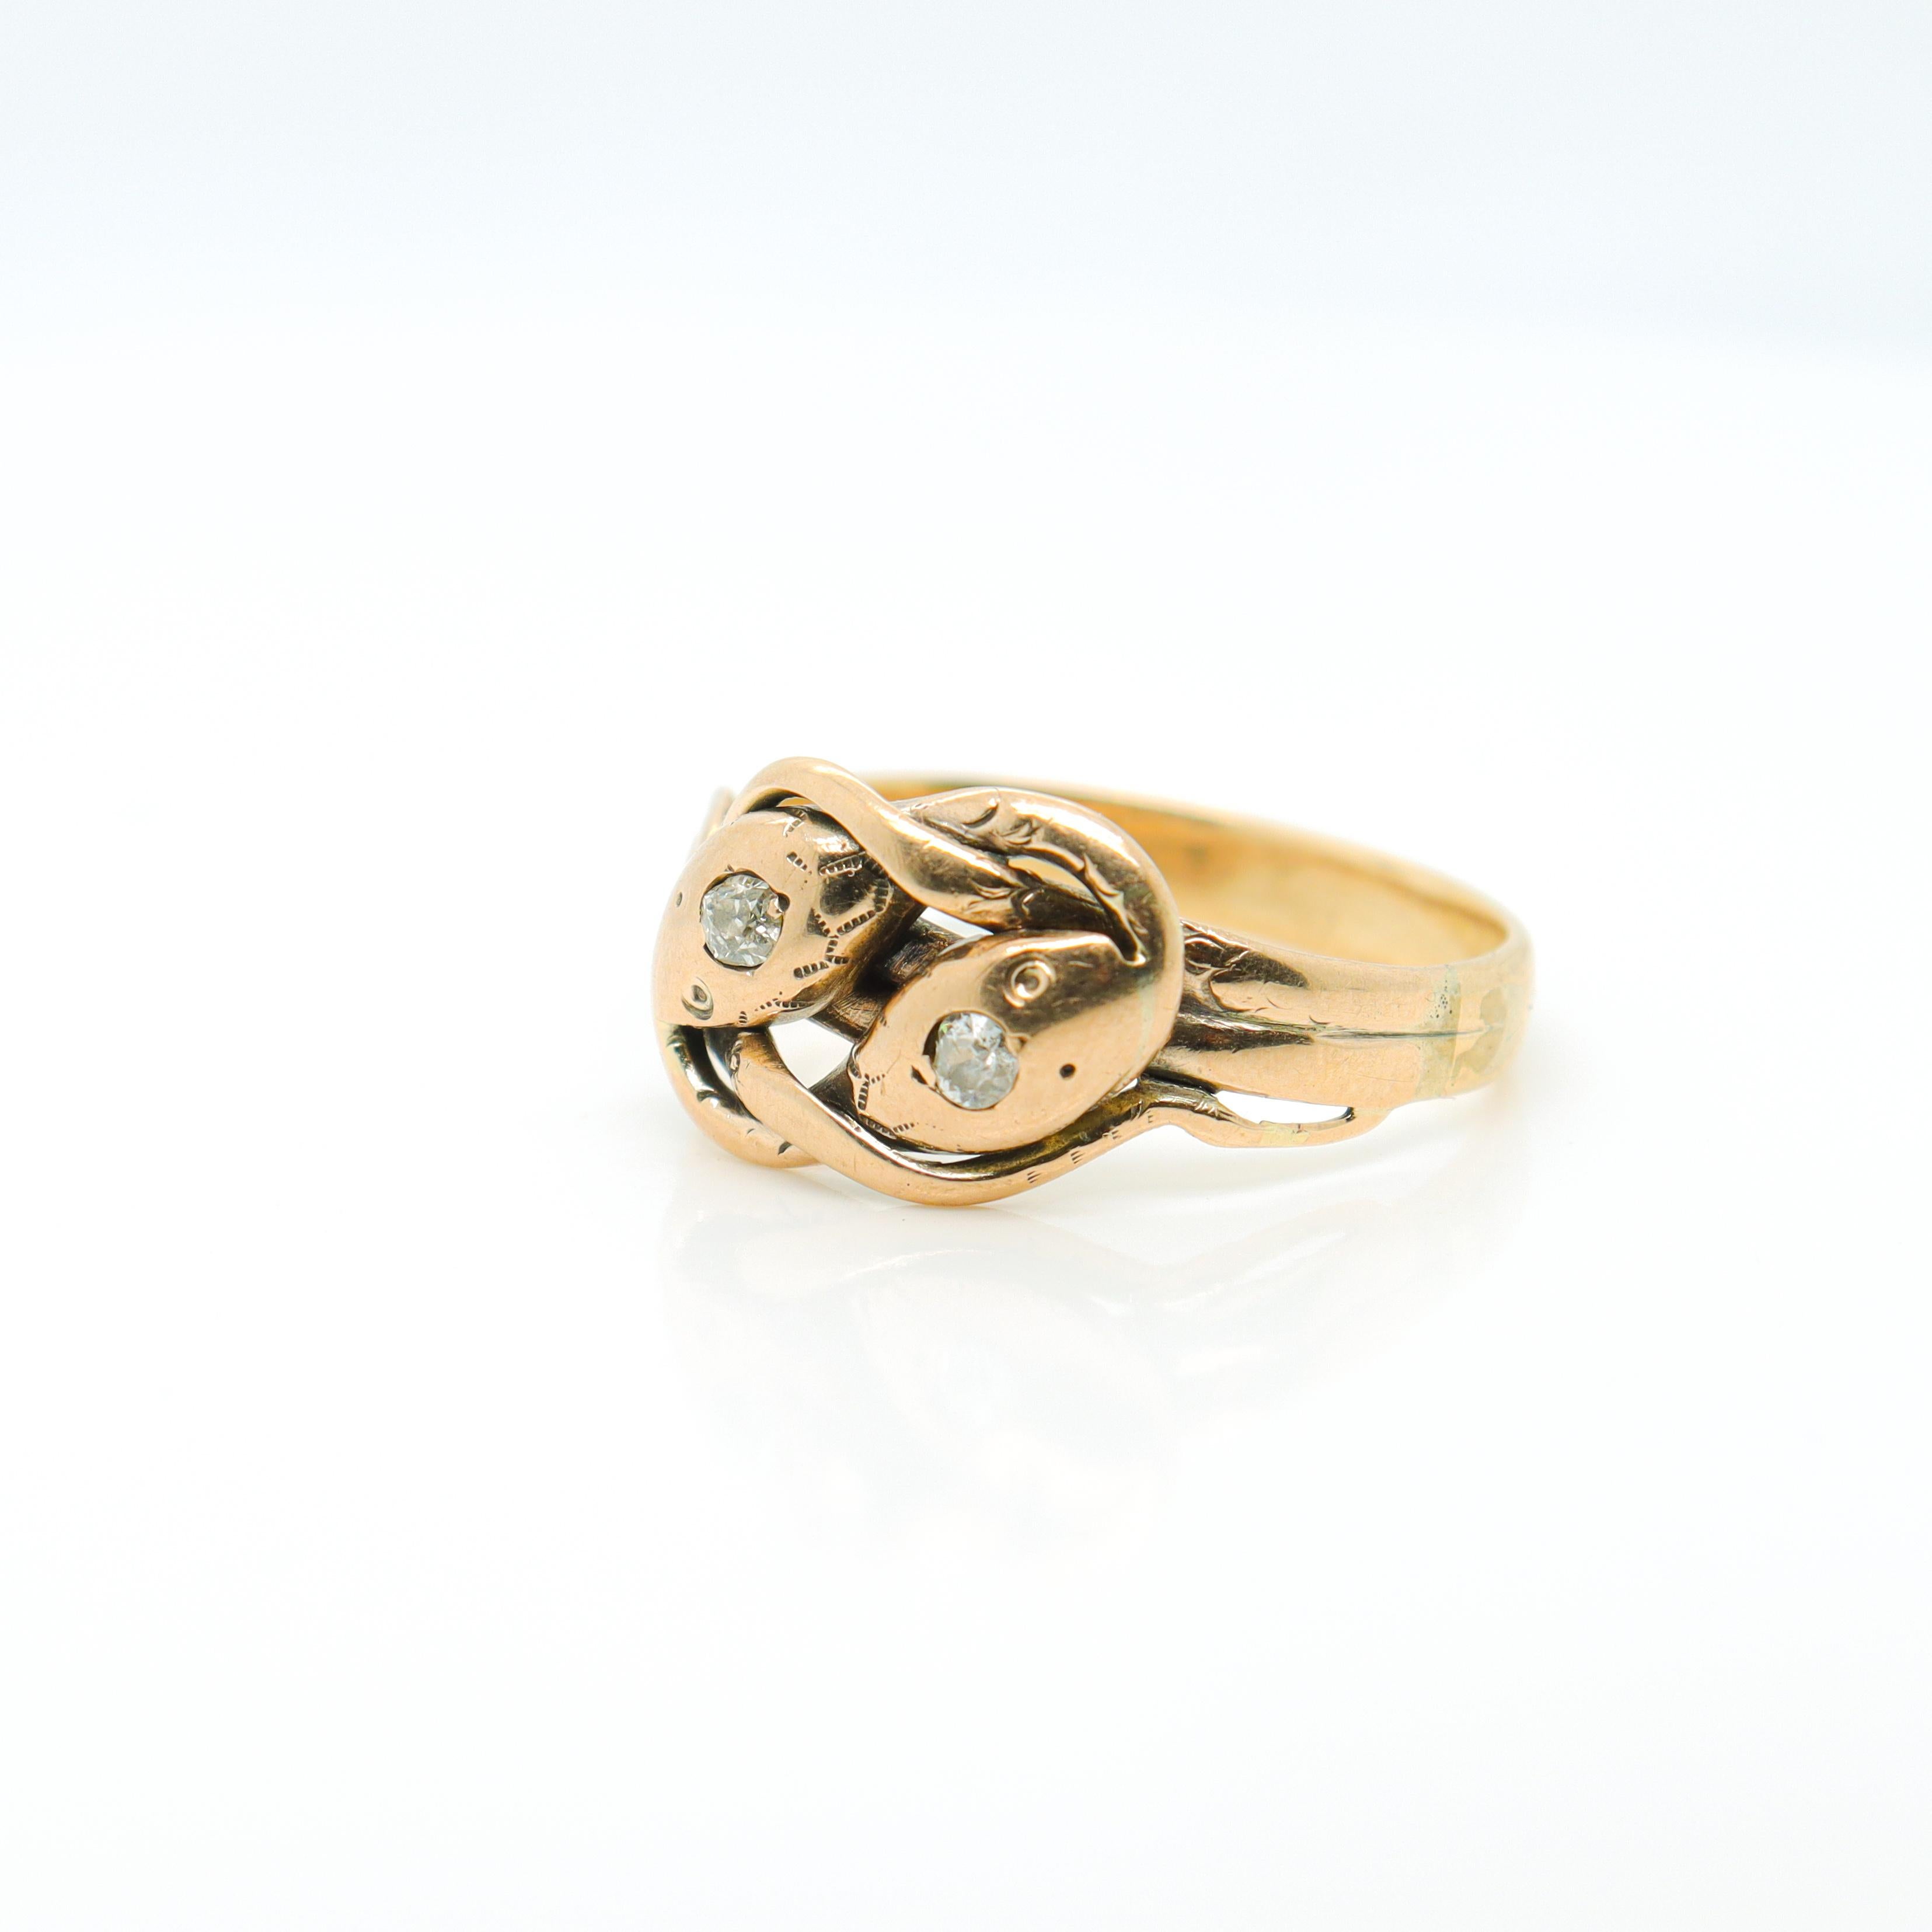 Eine feine antike Gold & Diamant figuralen Schlange Ring.

Aus 14K Gold.

In Form von 2 ineinander verschlungenen Schlangen. 

Jeder von ihnen ist mit einem runden Diamanten im Einheitsschliff besetzt und weist Spuren eines geätzten Designs